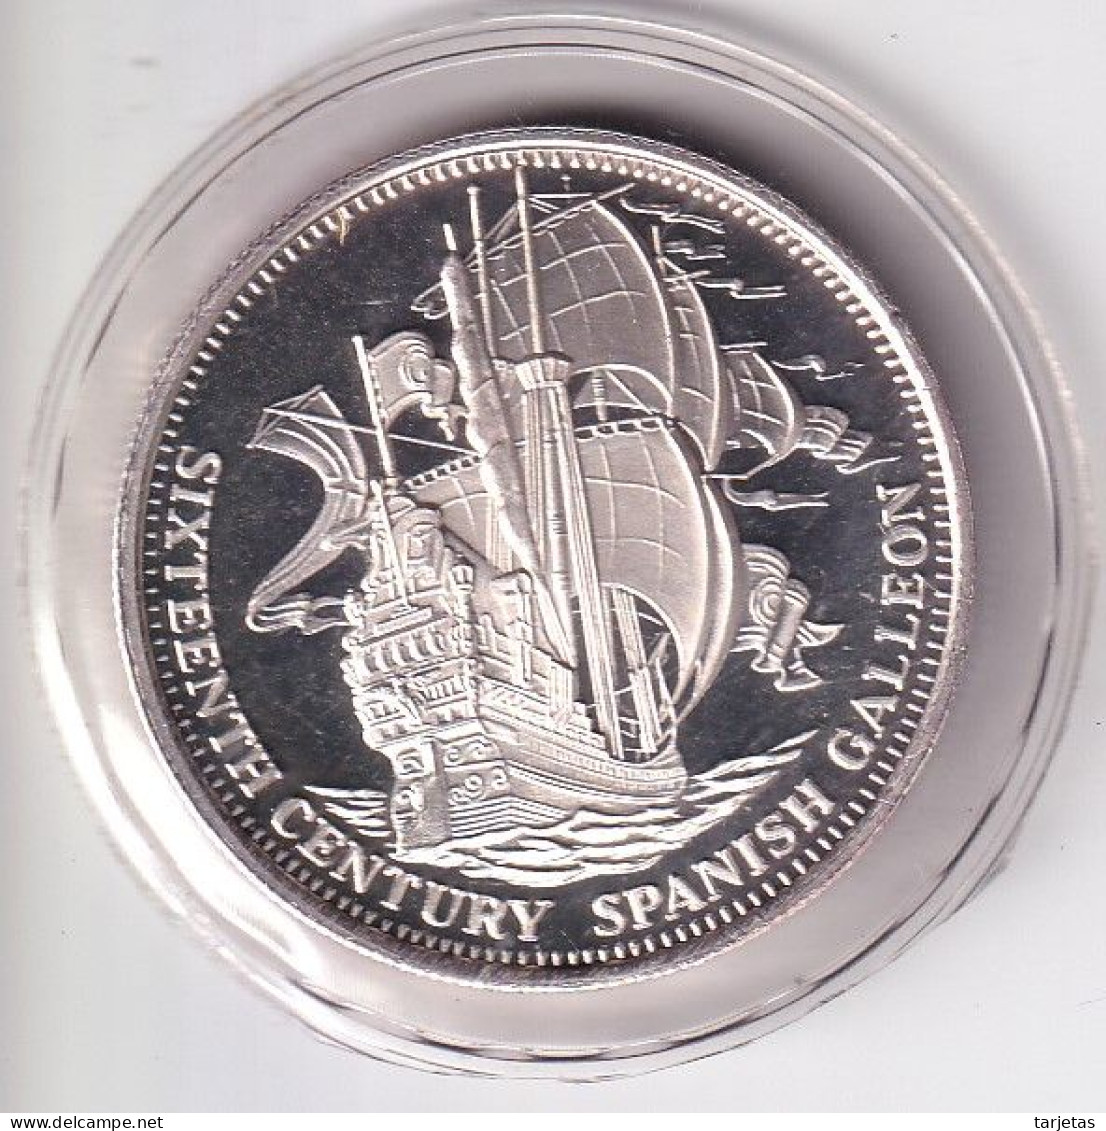 MONEDA DE PLATA DE ESTADOS UNIDOS DE 1 ONZA DE SIXTEENTH VENTURY SPANISH CALLEON (BARCO-SHIP) - Commemoratives